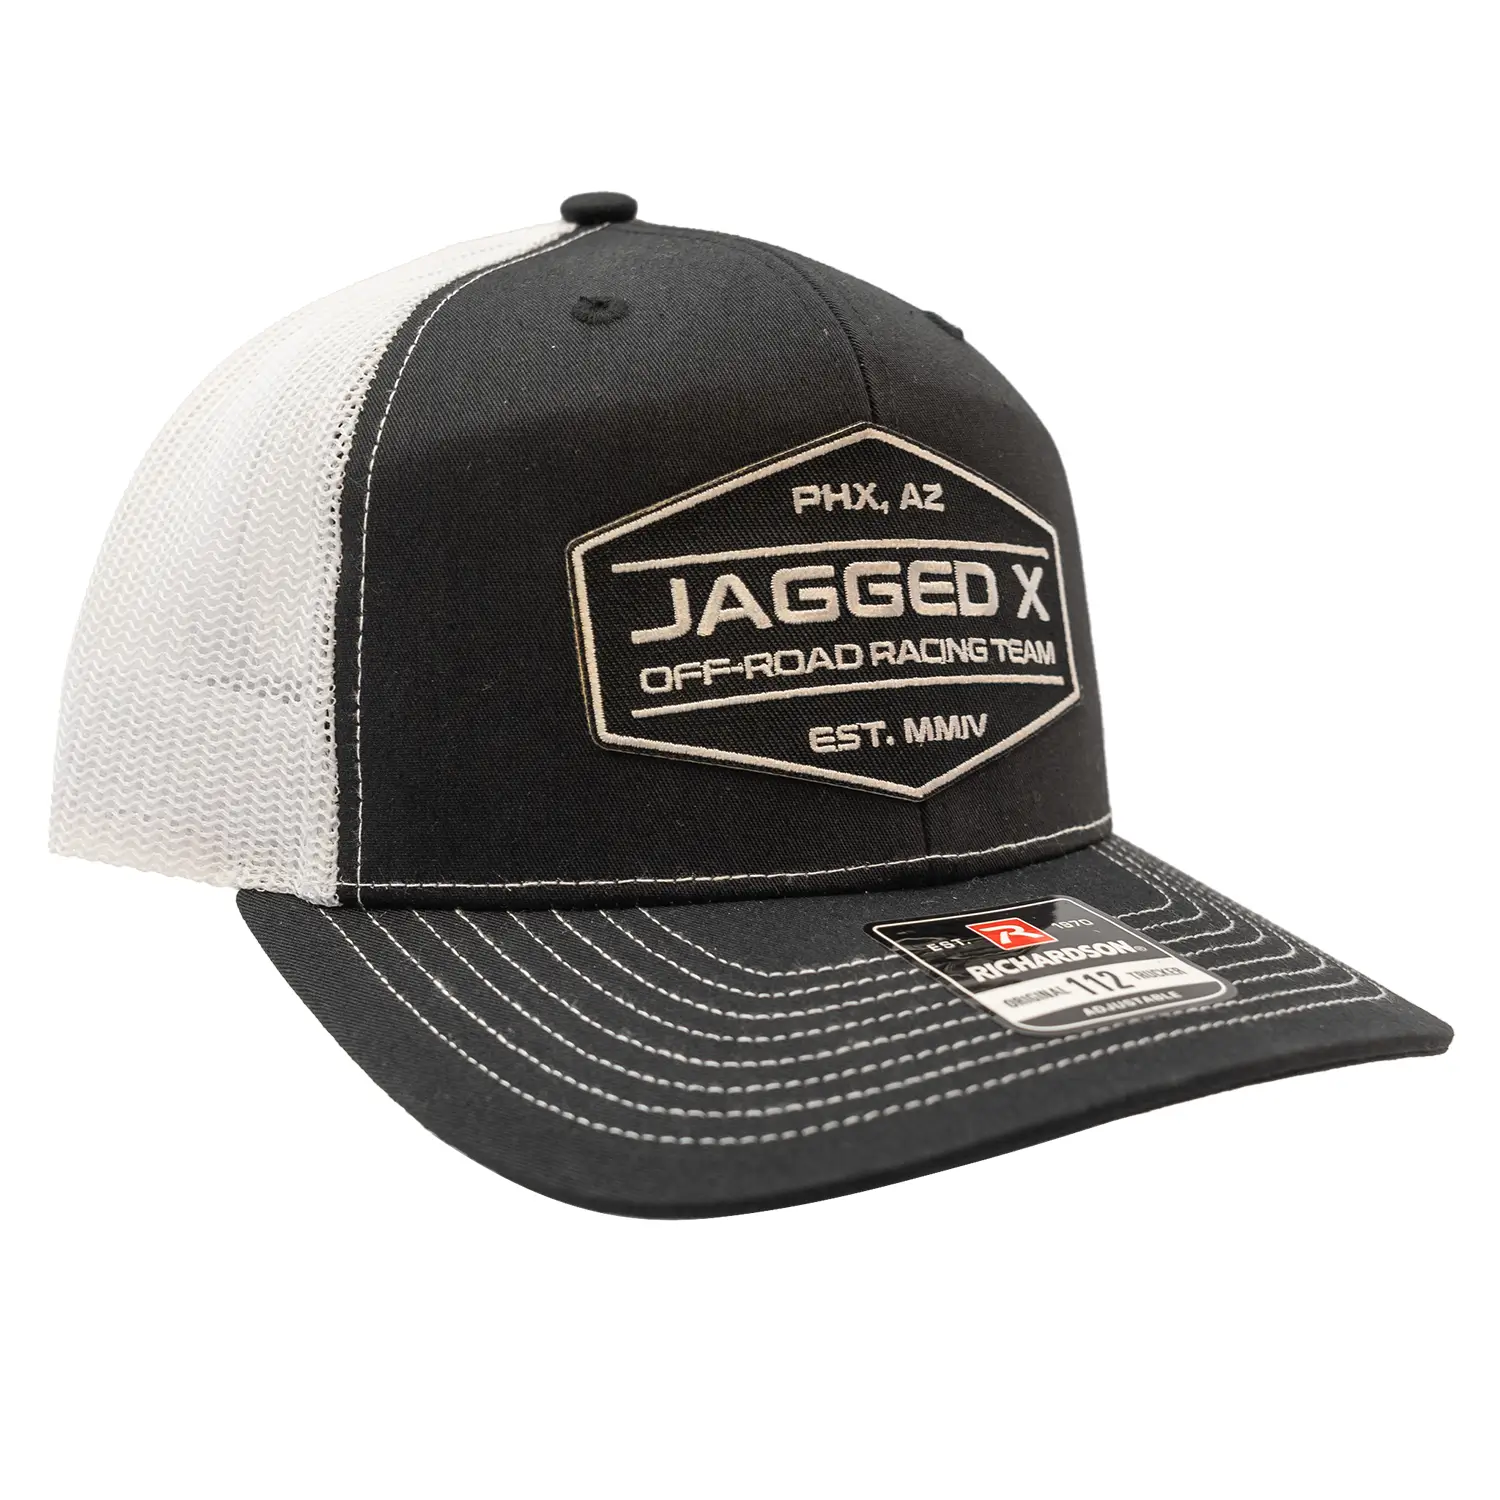 jagged x offroad trucker hat black white 3